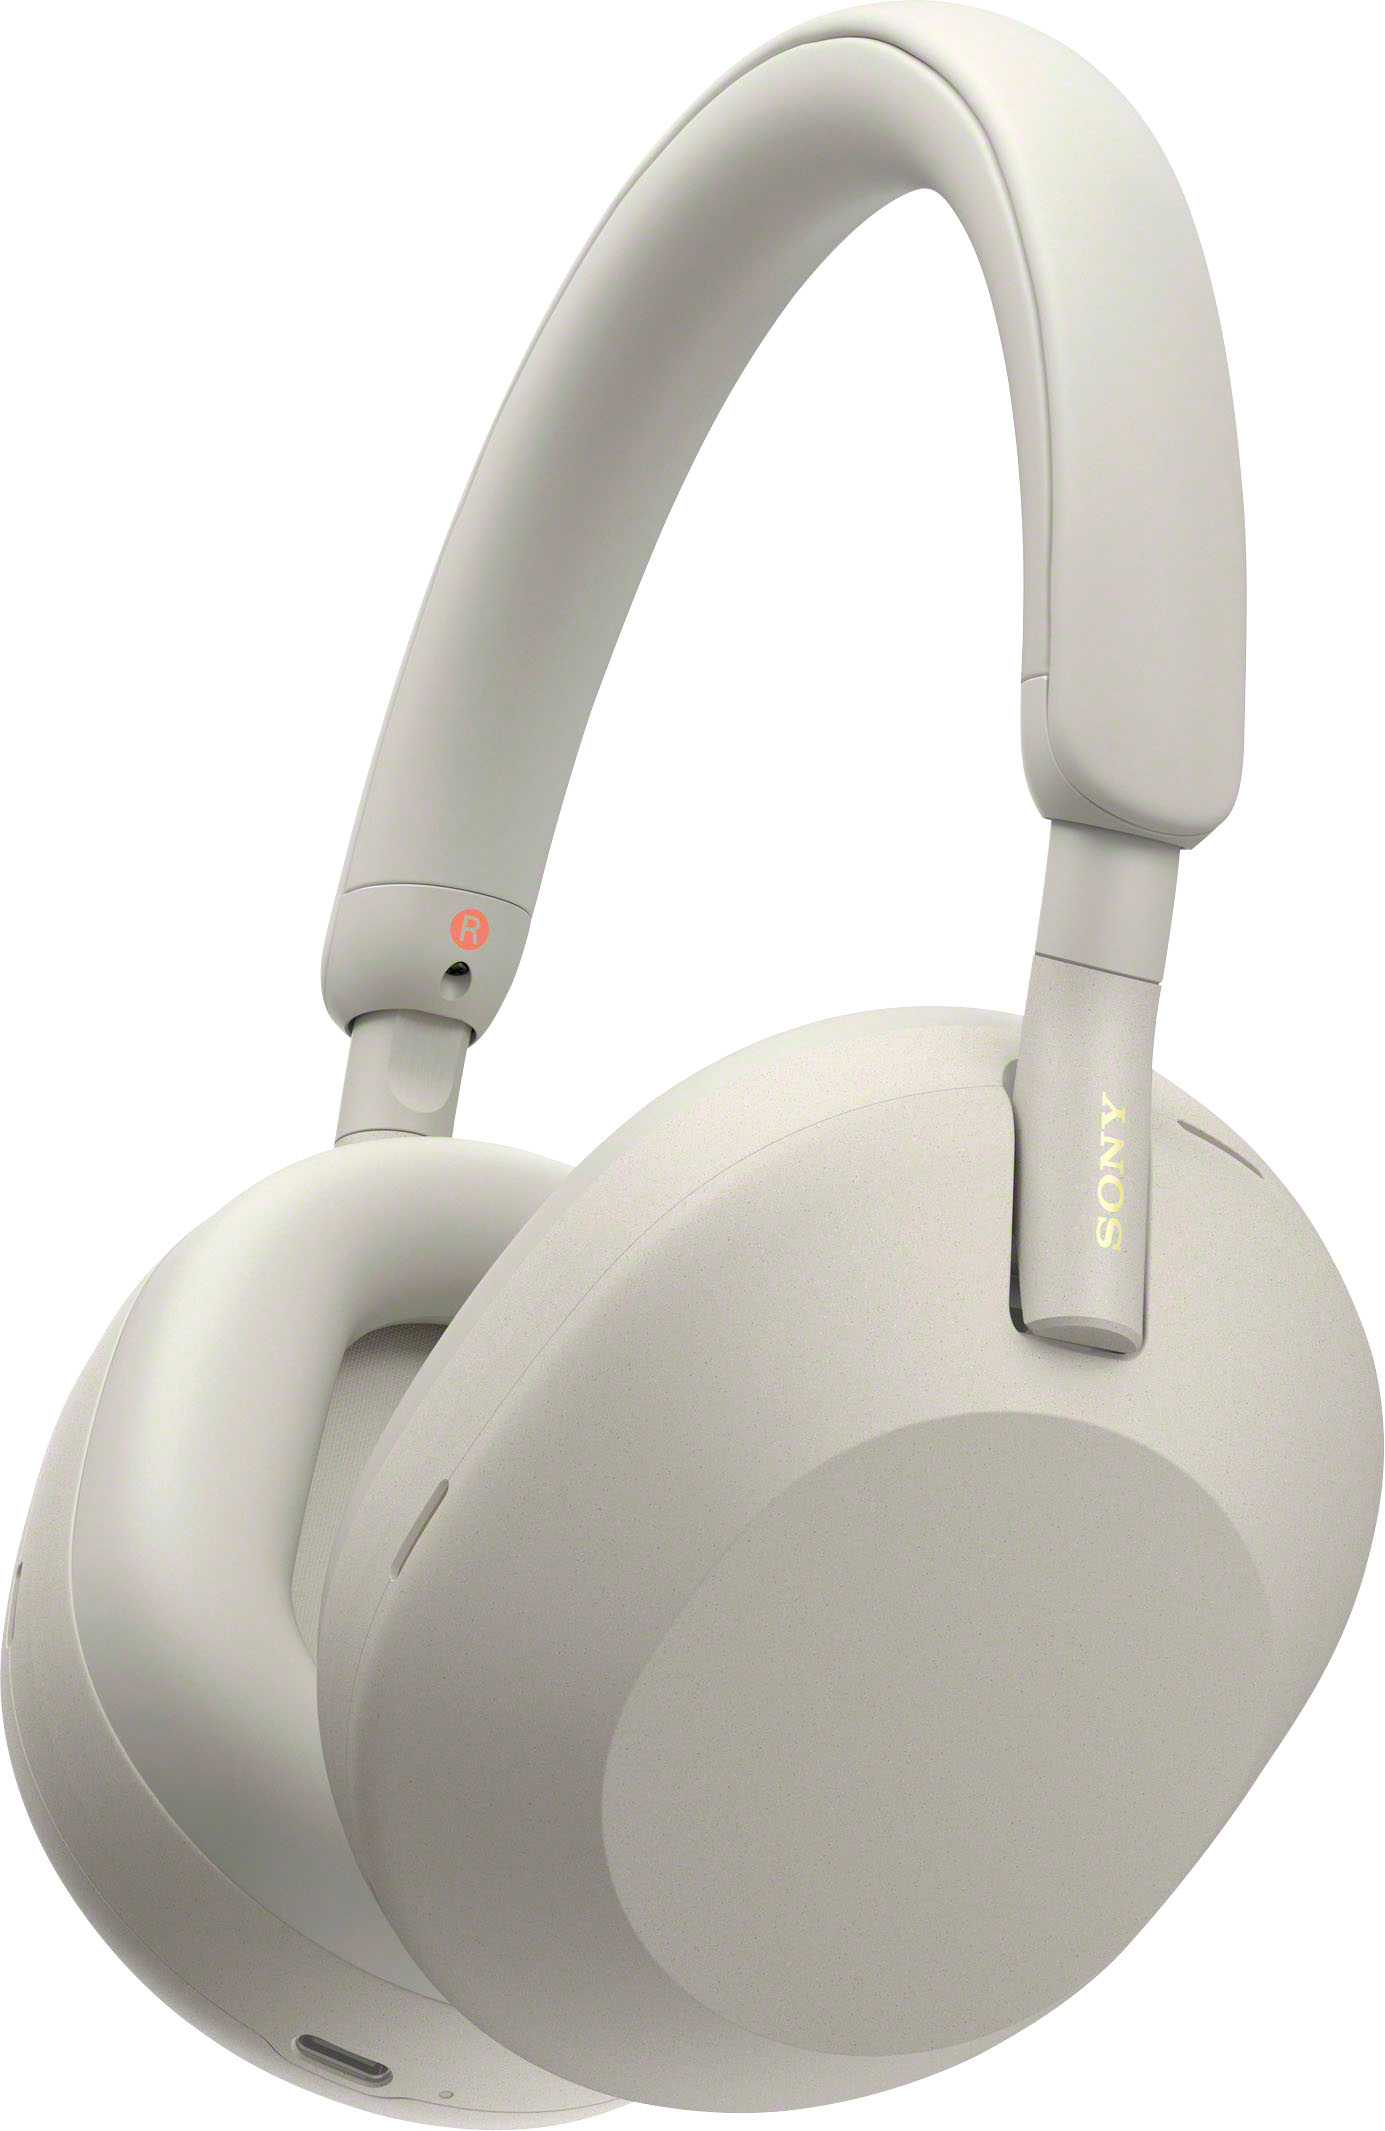 オーディオ機器 ヘッドフォン Sony WH-1000XM5 Wireless Noise-Canceling Over-the-Ear Headphones Silver  WH-1000XM5/S - Best Buy